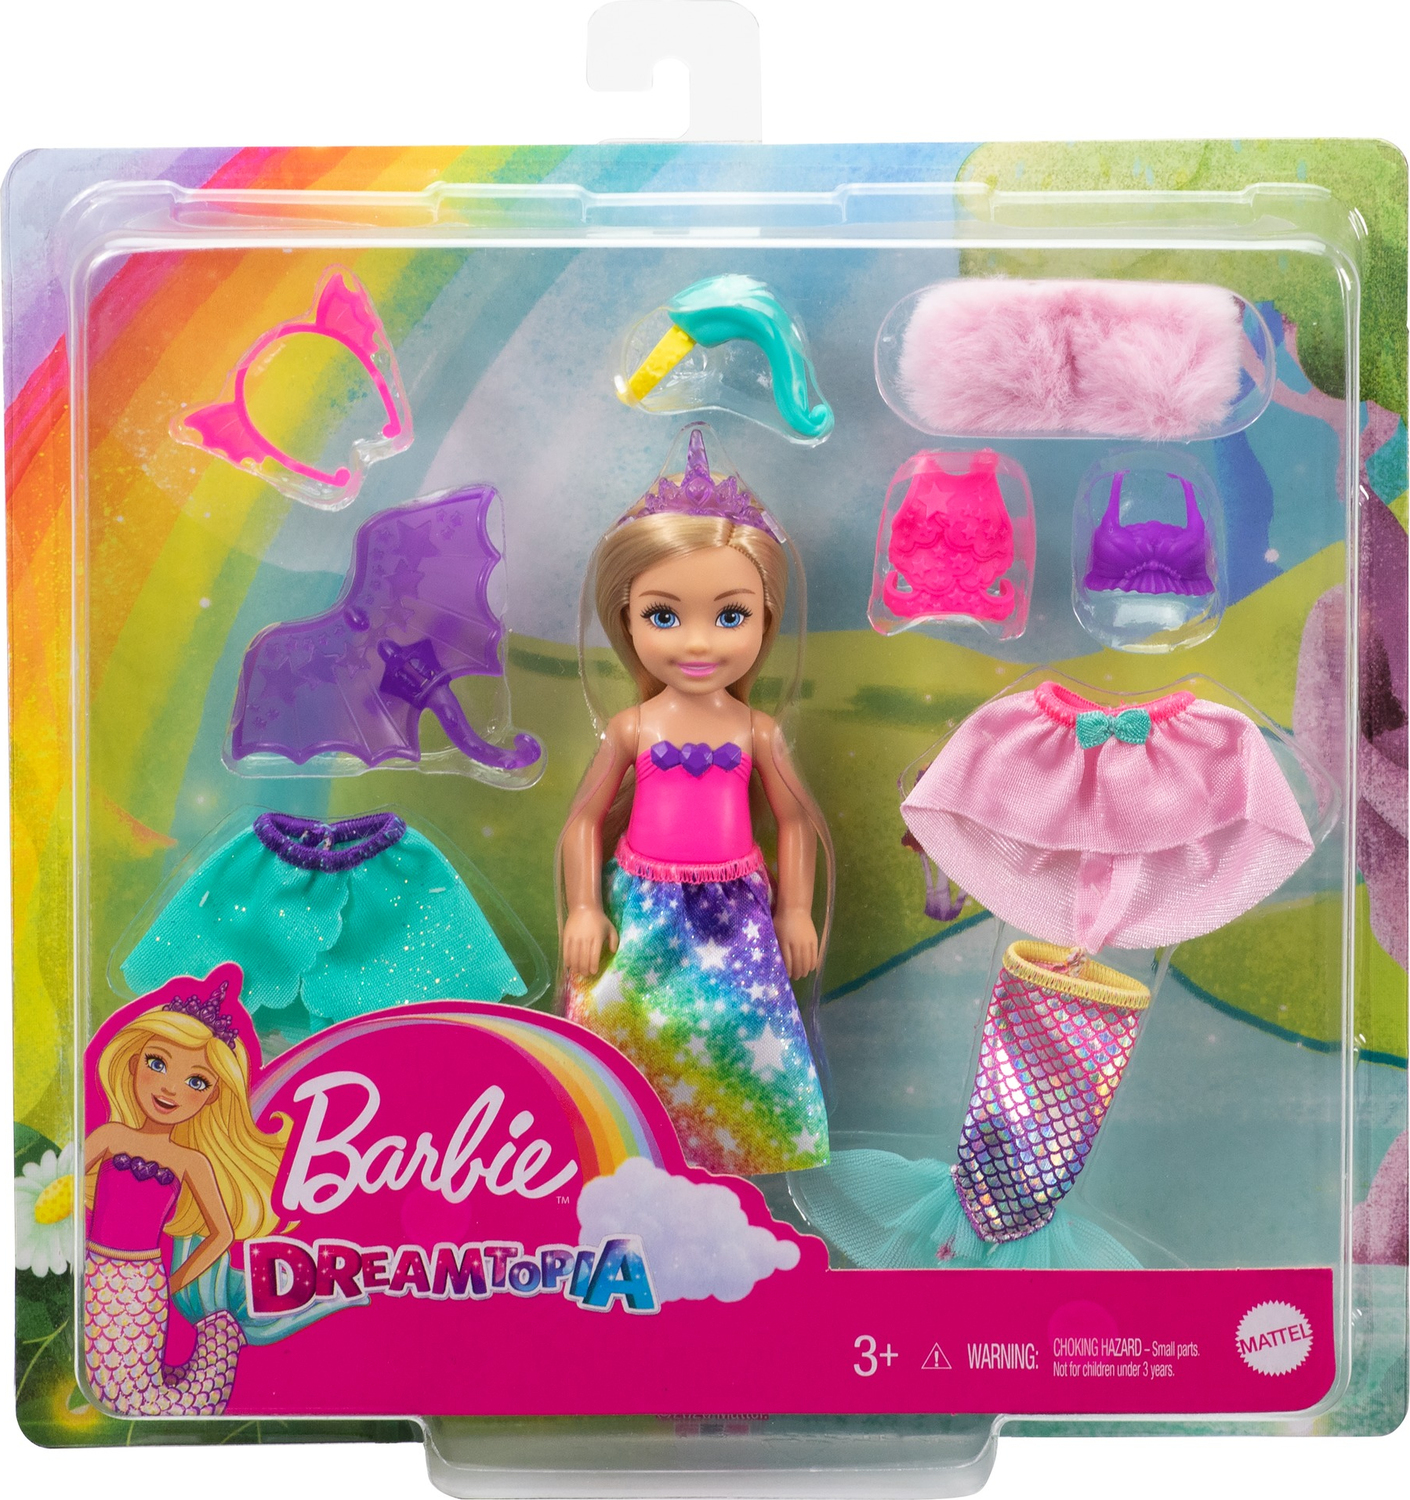 Barbie Dreamtopia Doll And Accessories